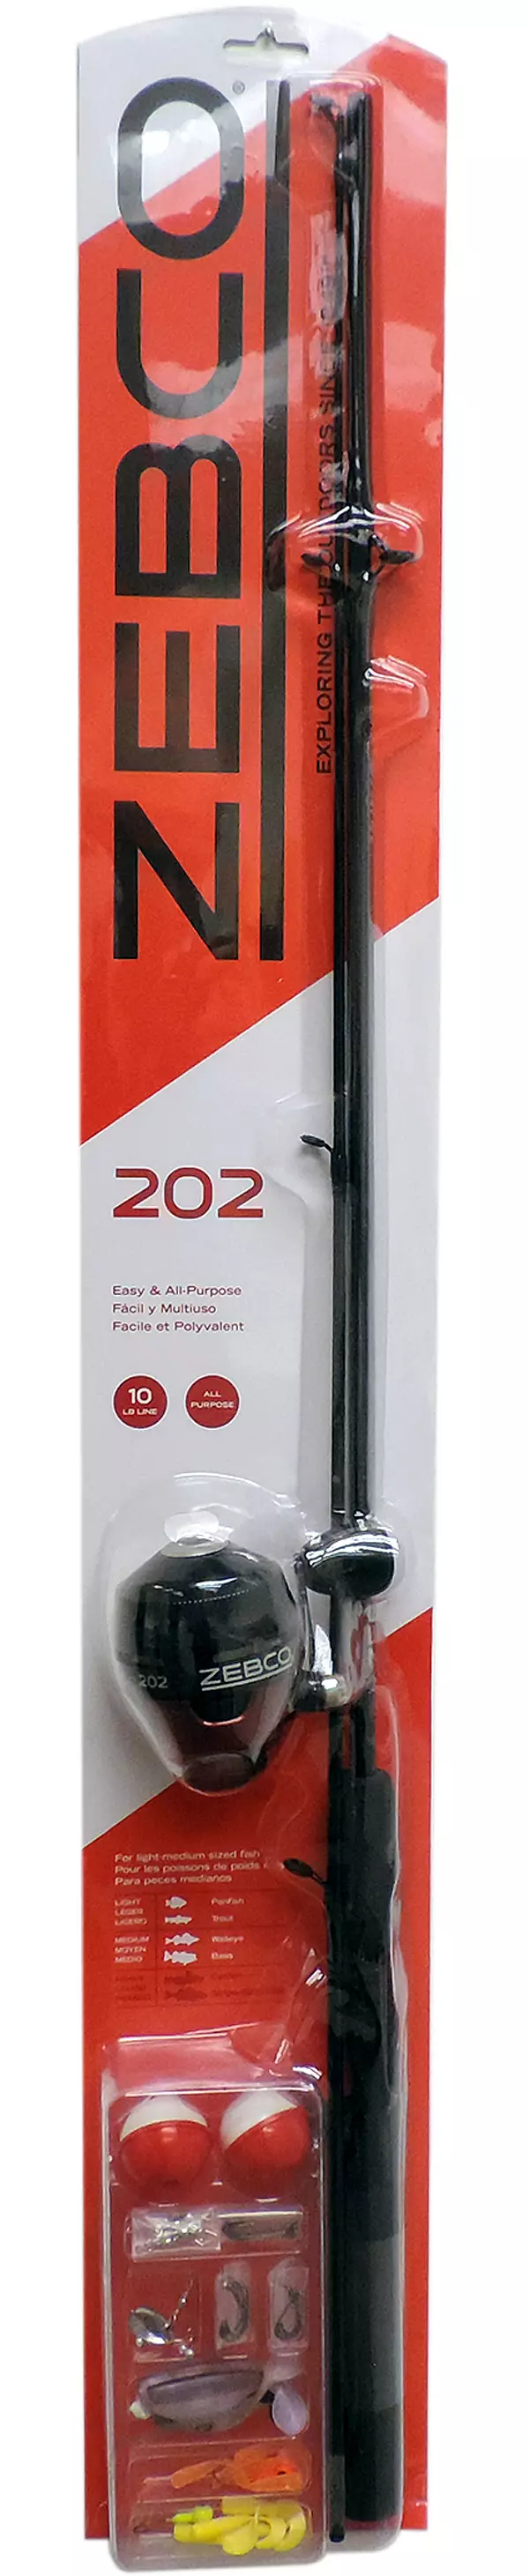 Zebco 202 Spincast Combo Kit